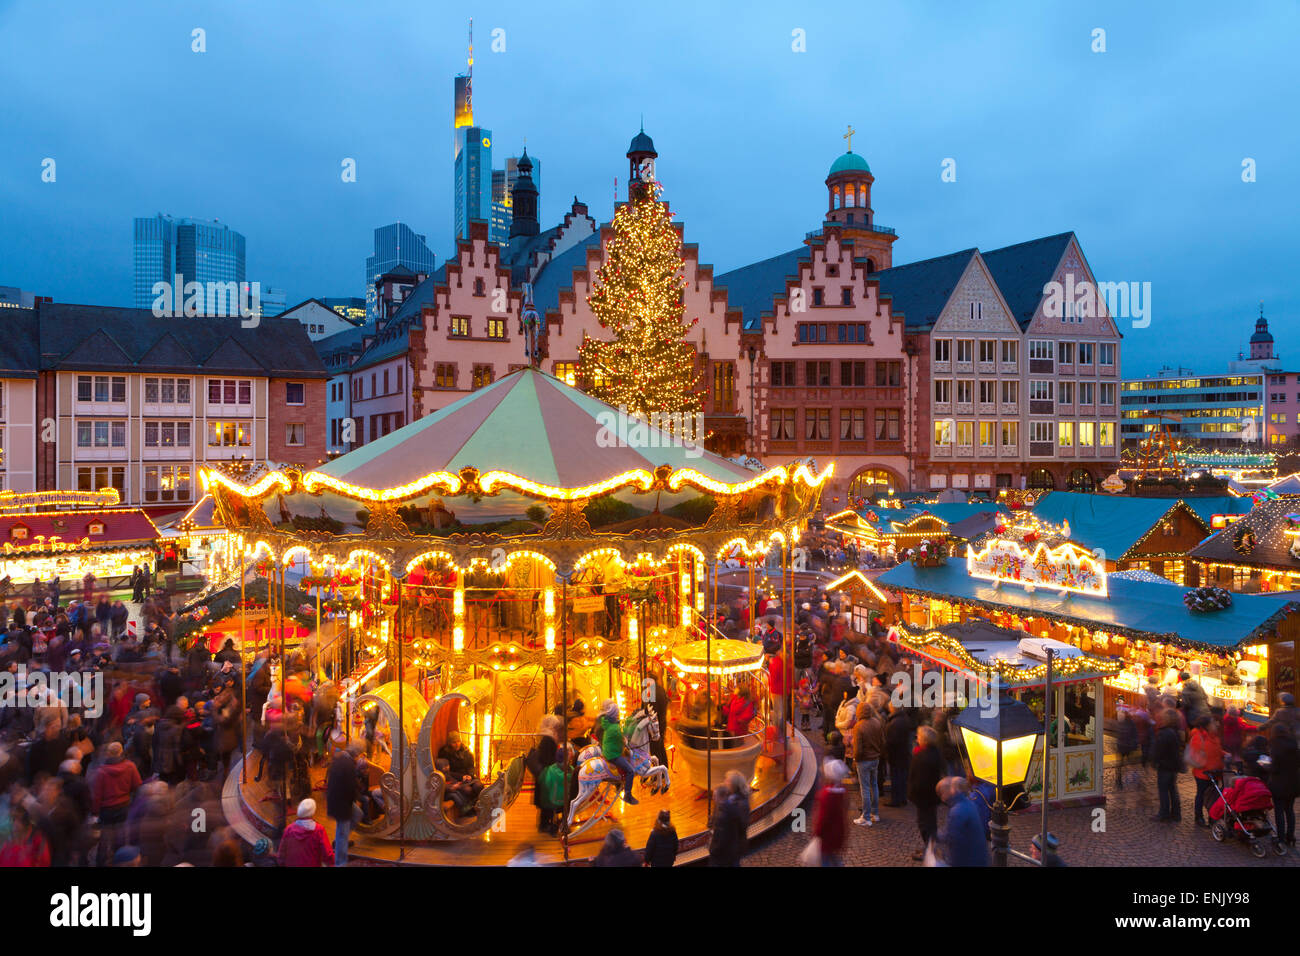 Weihnachtsmarkt in Romerberg, Frankfurt am Main, Deutschland, Europa Stockfoto